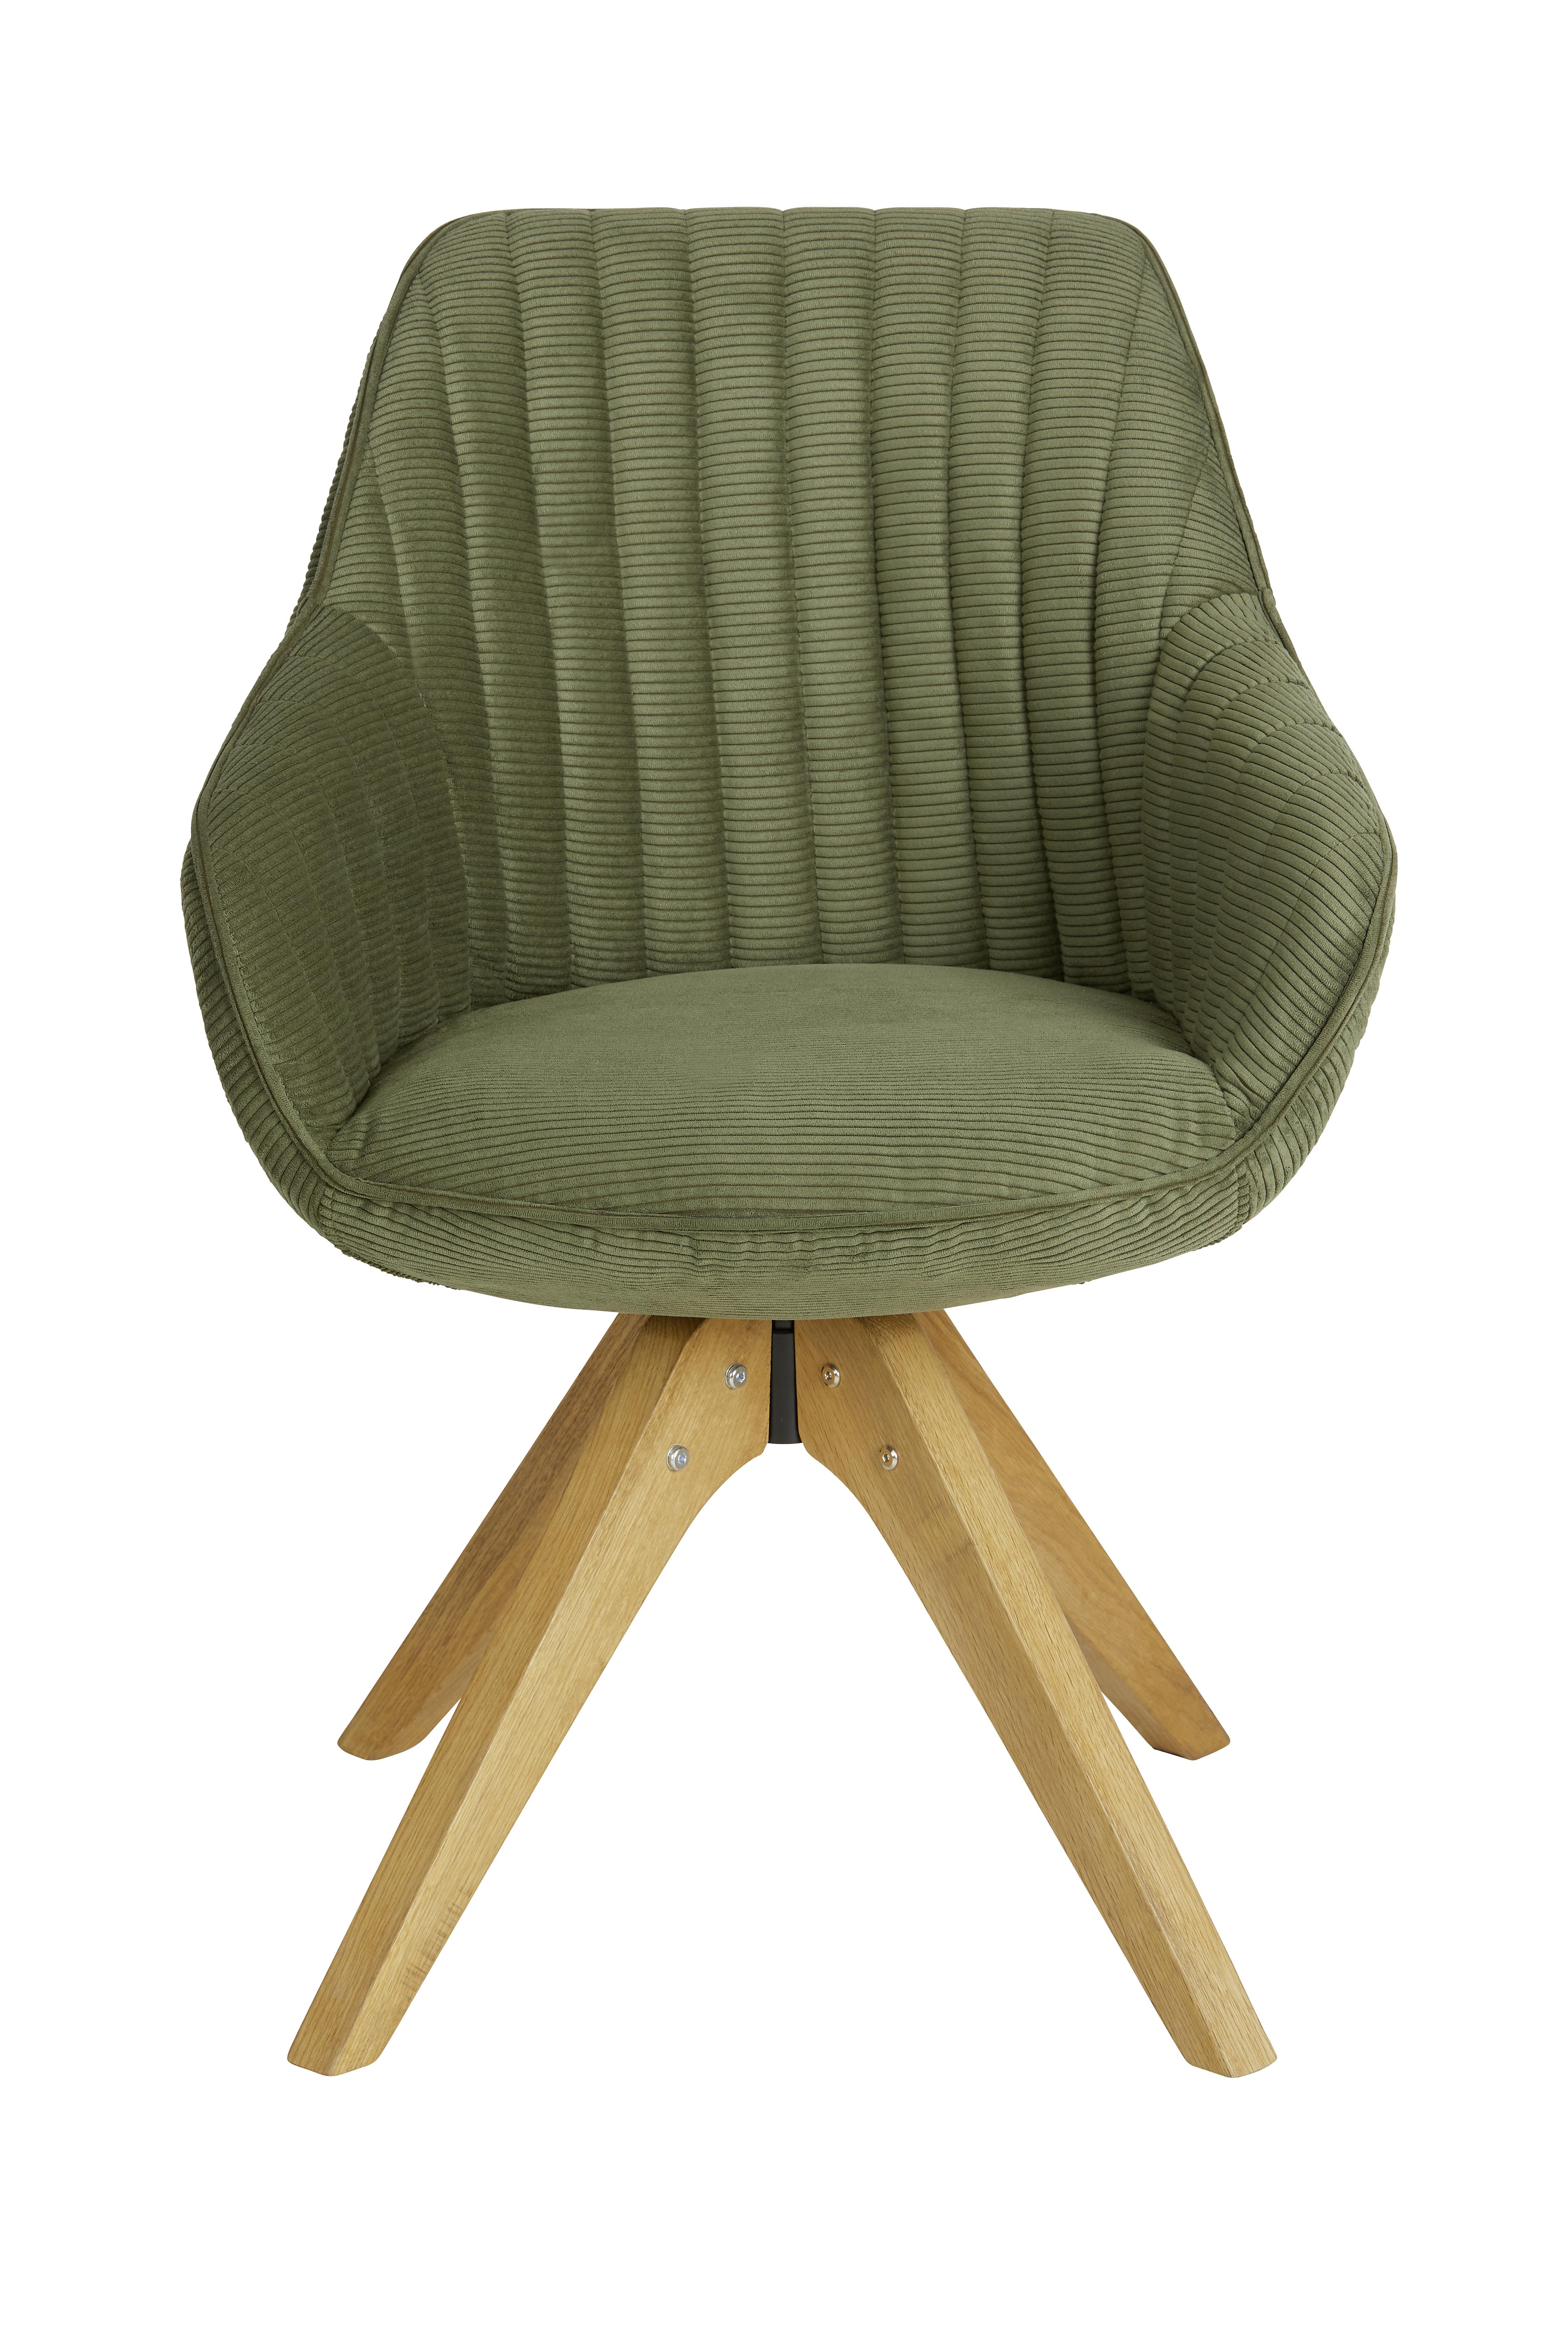 Židle S Područkami Chill -Bp- - přírodní barvy/olivově zelená, Moderní, dřevo/textil (60/83/65cm) - Premium Living